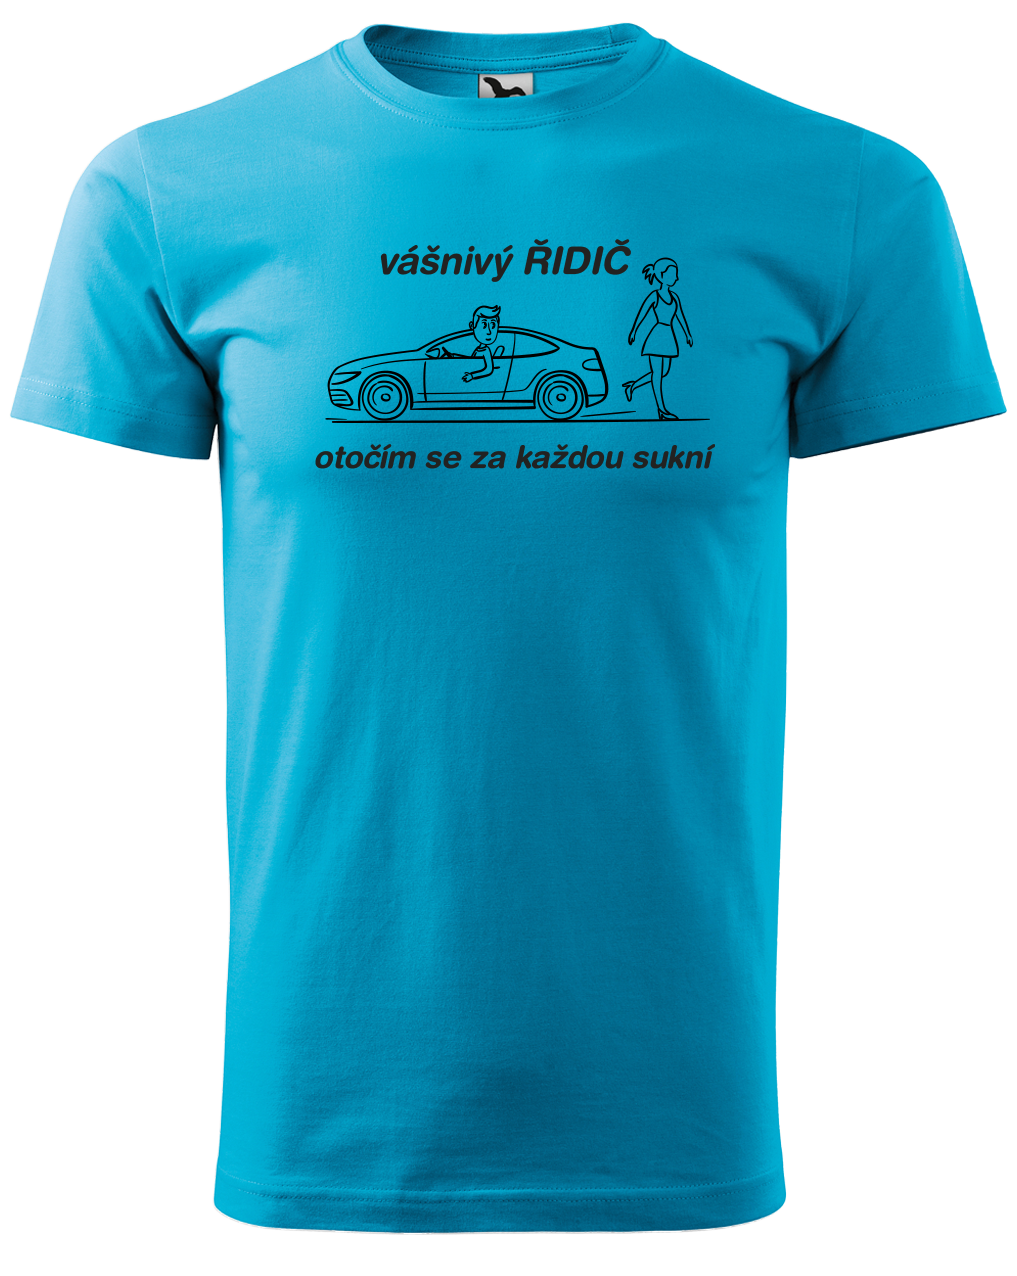 Vtipné tričko pro řidiče - Vášnivý řidič Velikost: S, Barva: Tyrkysová (44)